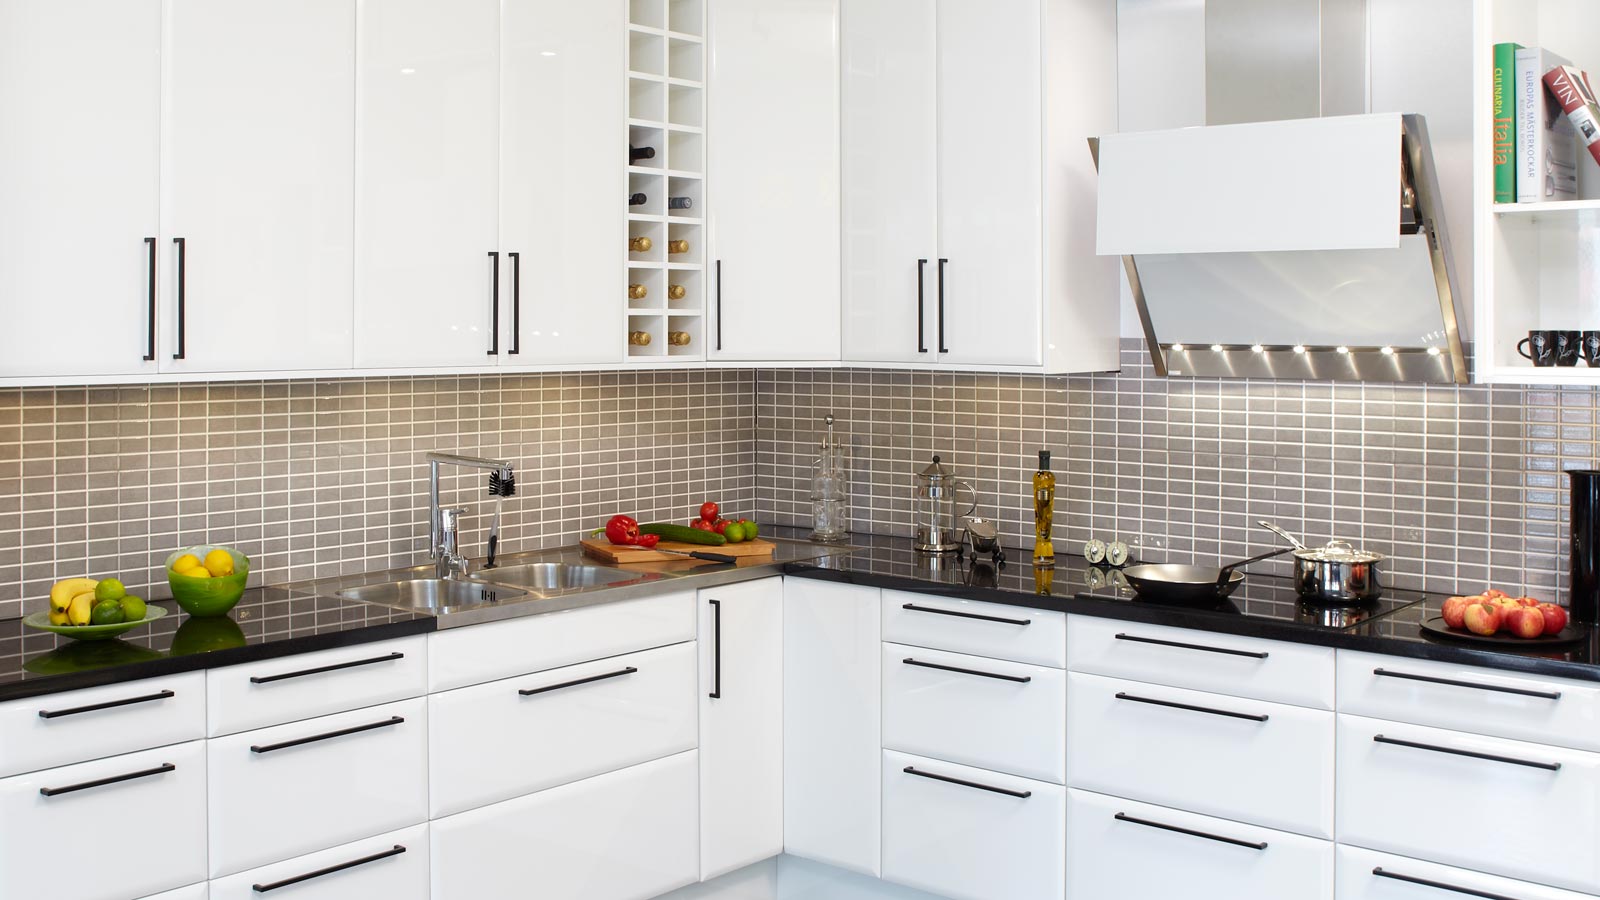 Nya köksluckor hittar du på Smartkök till ett bra pris. På bilden visas ett kök som går i vitt med svarta stilrena handtag och kakel med små rektangulära rutor i grått.